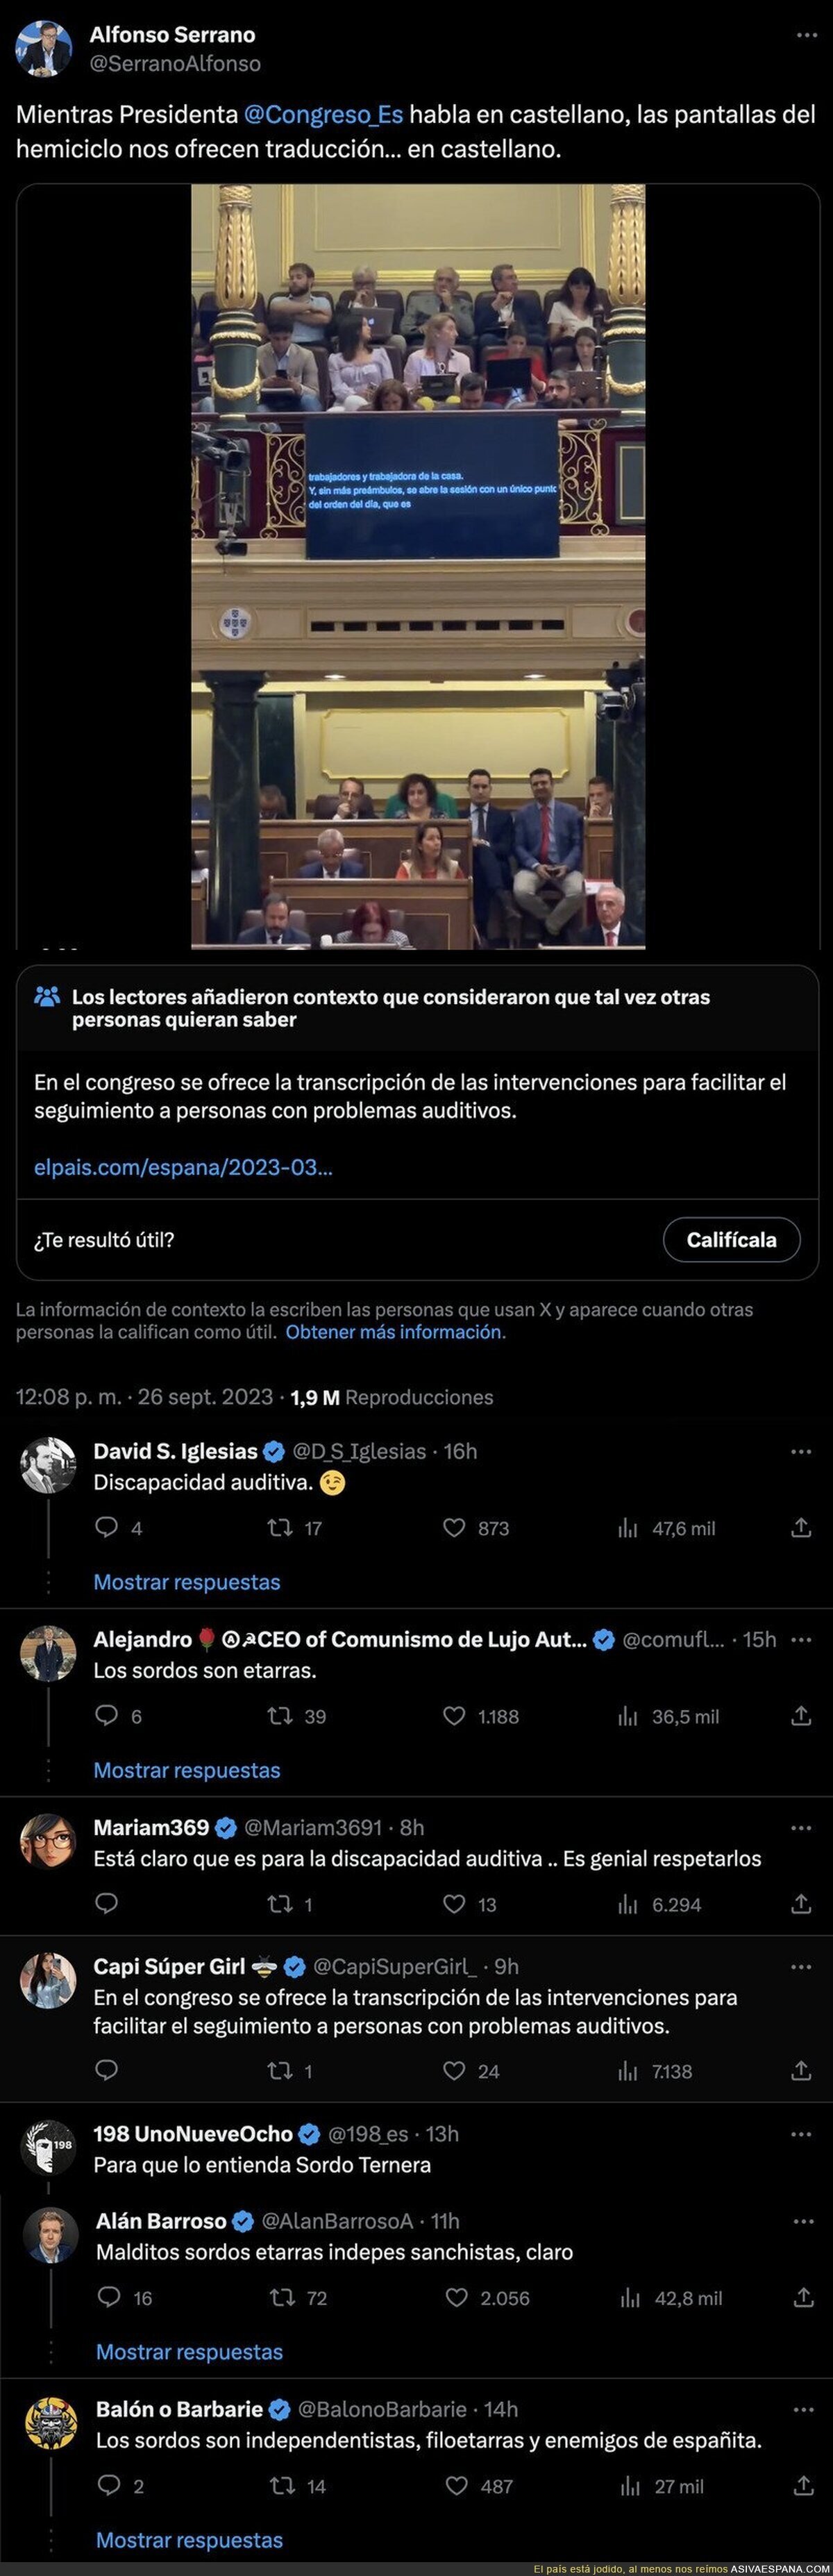 El secretario general del PP en Madrid se indigna por esta pantalla en el Congreso